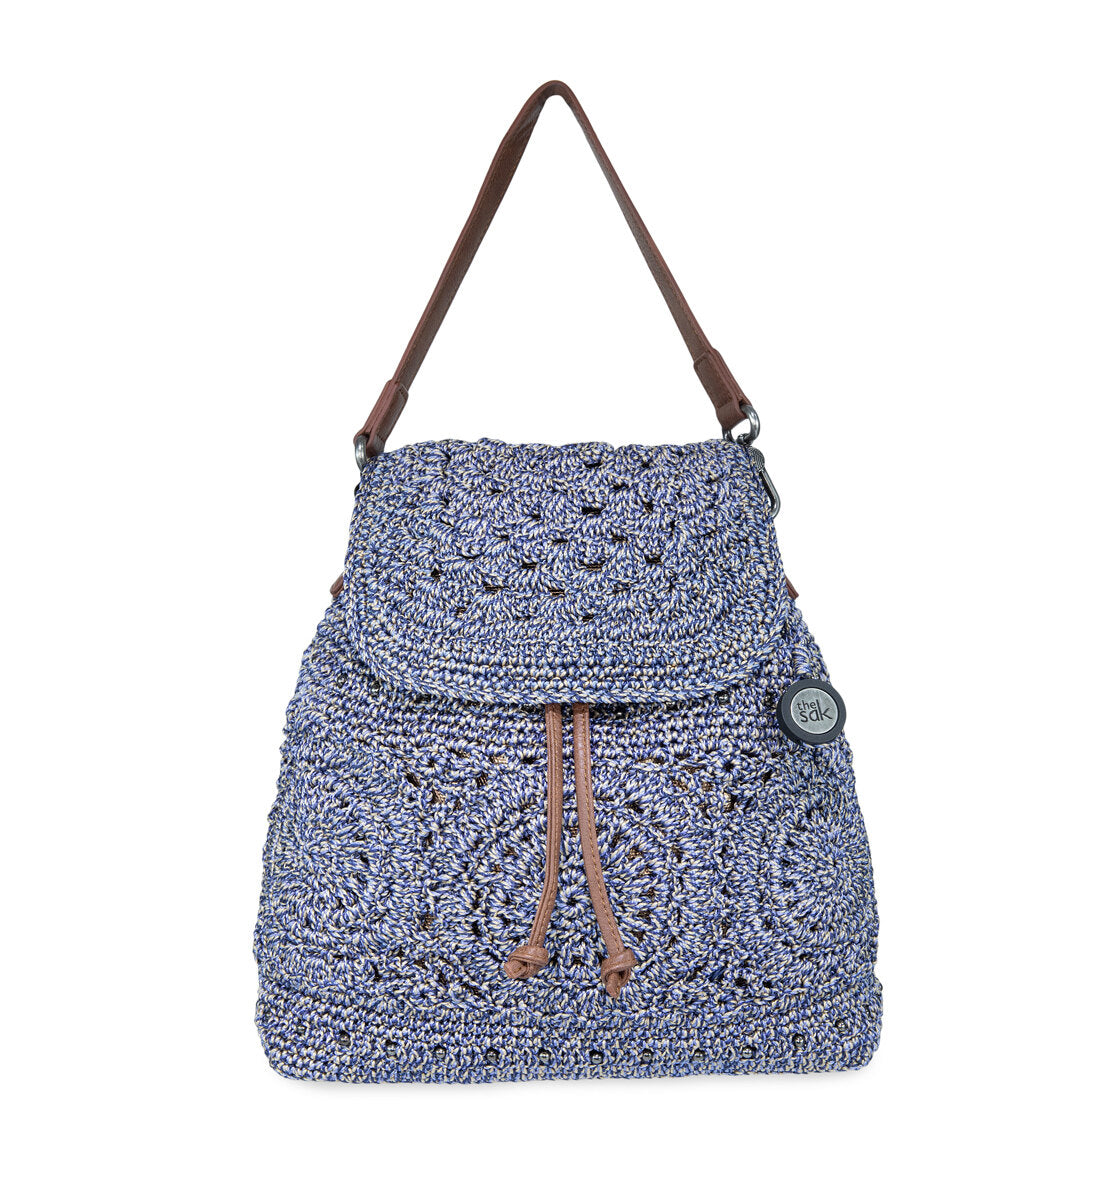 Buy Handmade Crochet Bag Backpack Bag Beige & Black, Unique Gift for Her,  Women Gift Online in India - Etsy